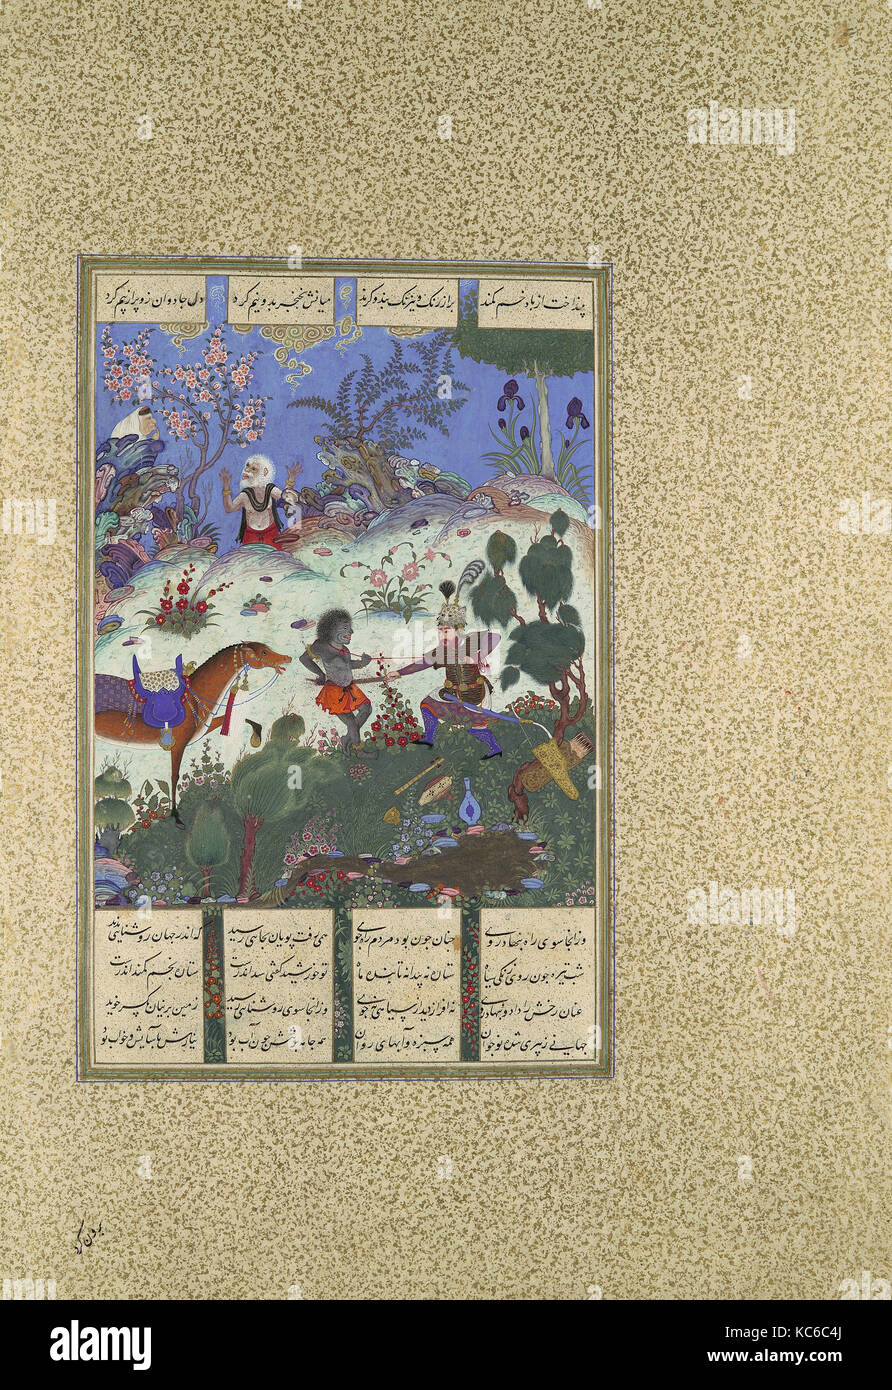 Le quatrième cours 'Rustam, il segmente une sorcière', Folio 120v de l'Shahnama (Livre des Rois) de Shah Tahmasp Banque D'Images